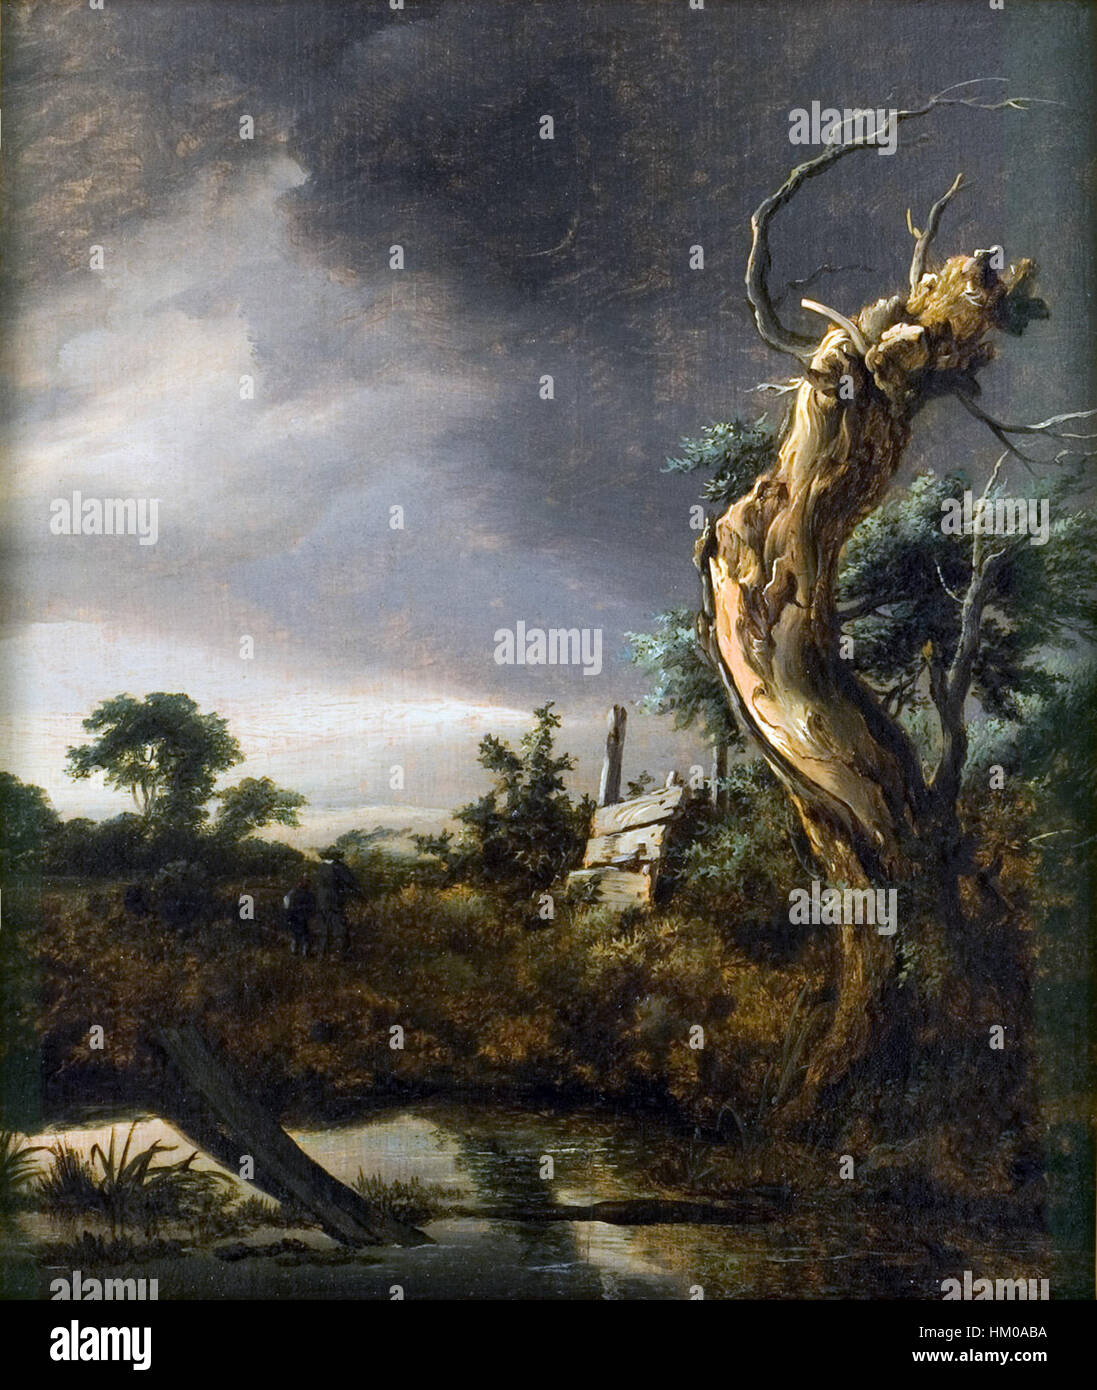 Jacob van Ruisdael - Landschap met Dode Boom Bij Opkomende Sturm Stockfoto